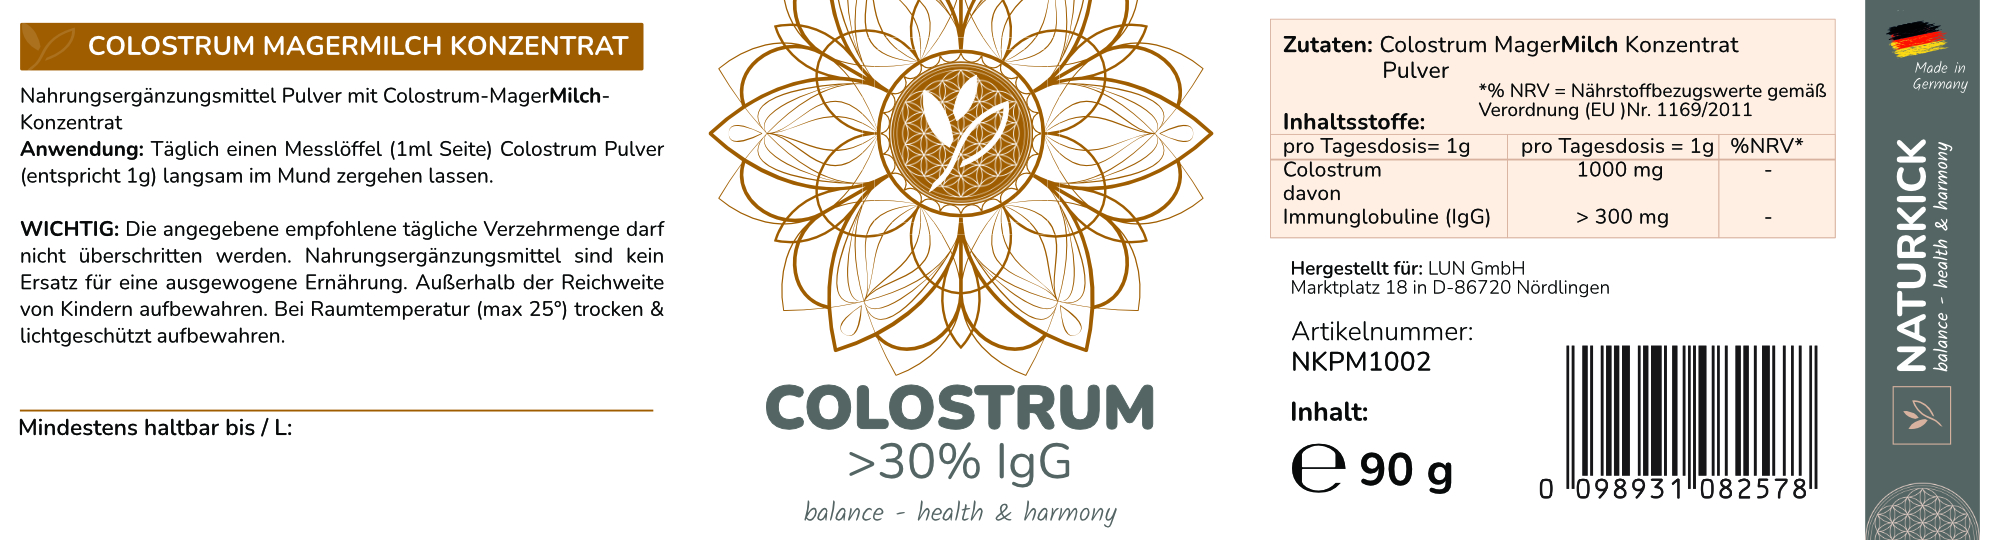 NATURKICK Roh Colostrum mit 30% IgG 90g Magermilchkonzentrat